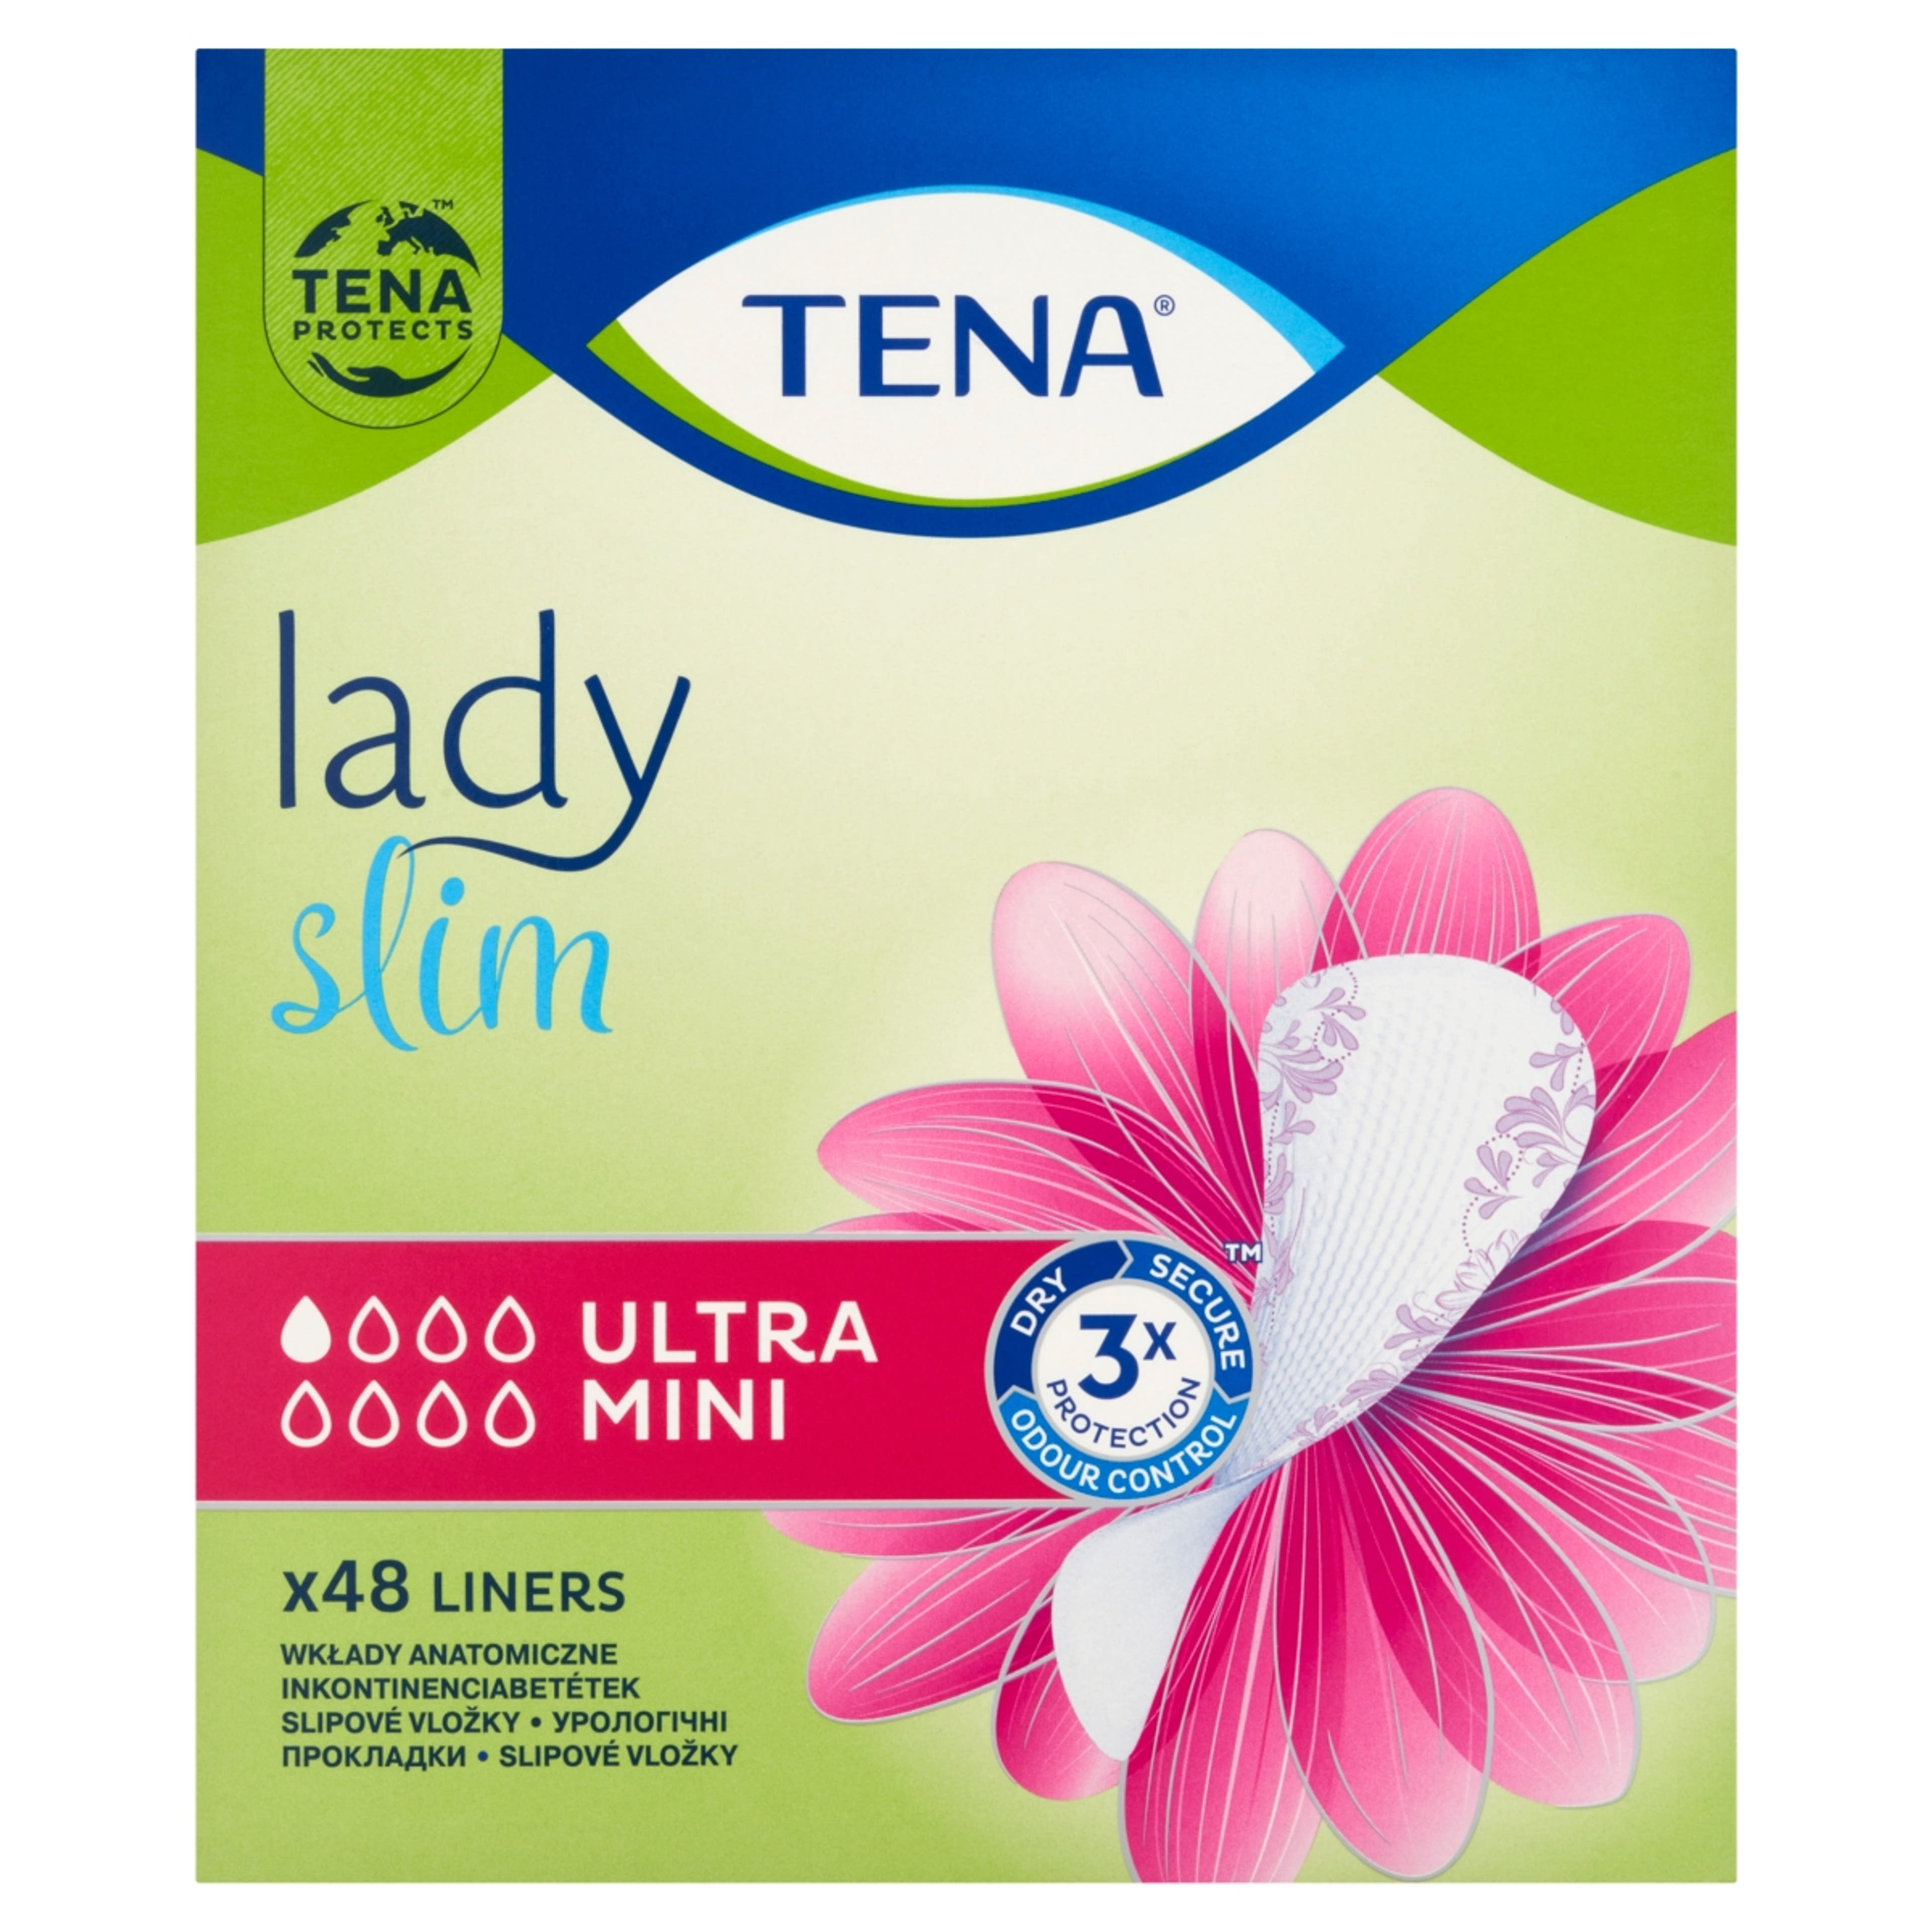 Tena Lady inkontinencia betét ultra mini slim - 1 db